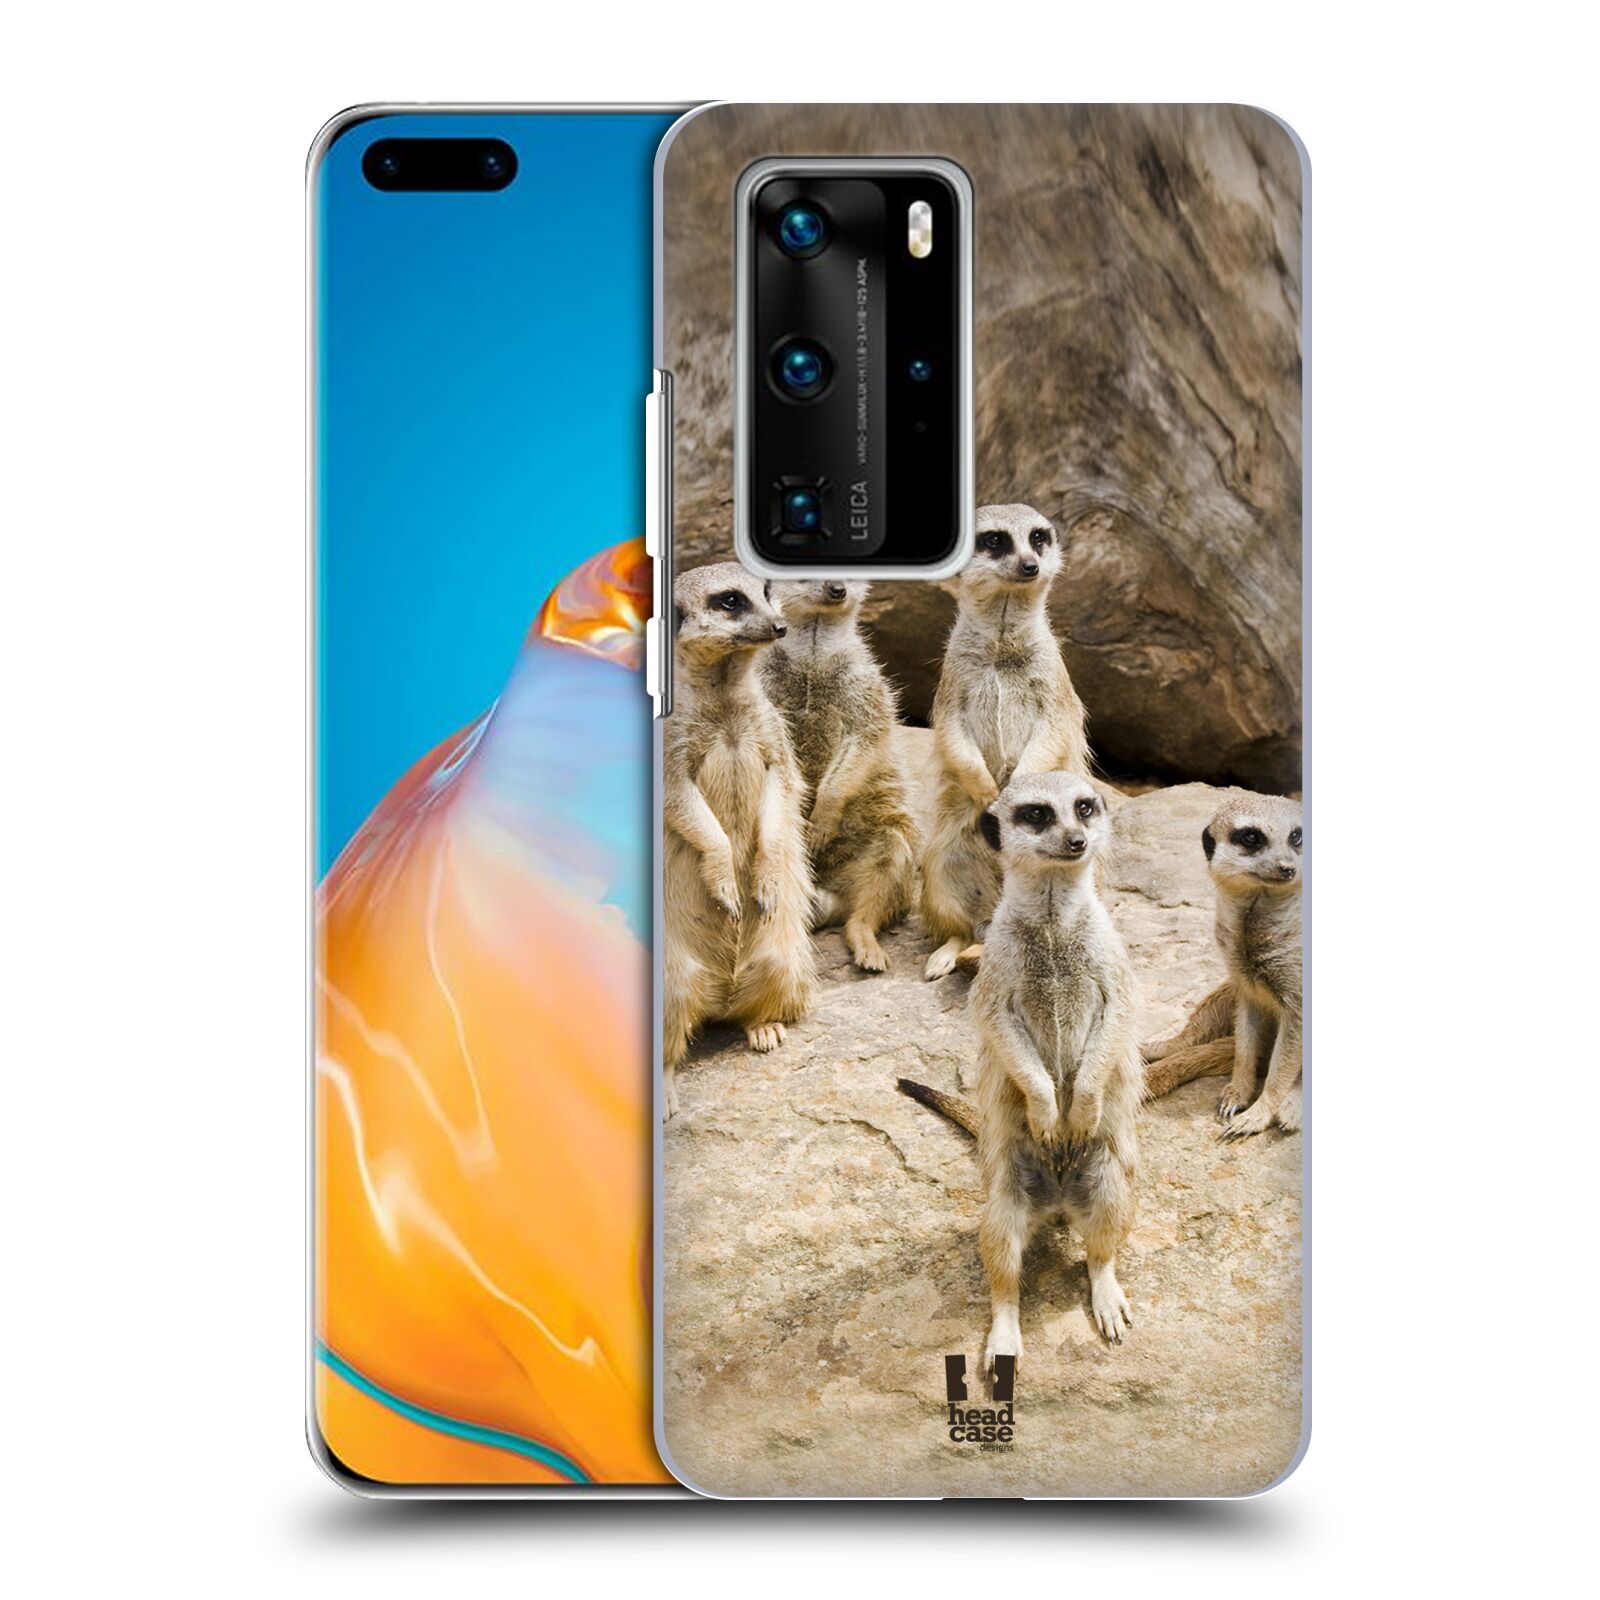 Zadní obal pro mobil Huawei P40 PRO / P40 PRO PLUS - HEAD CASE - Svět zvířat roztomilé surikaty